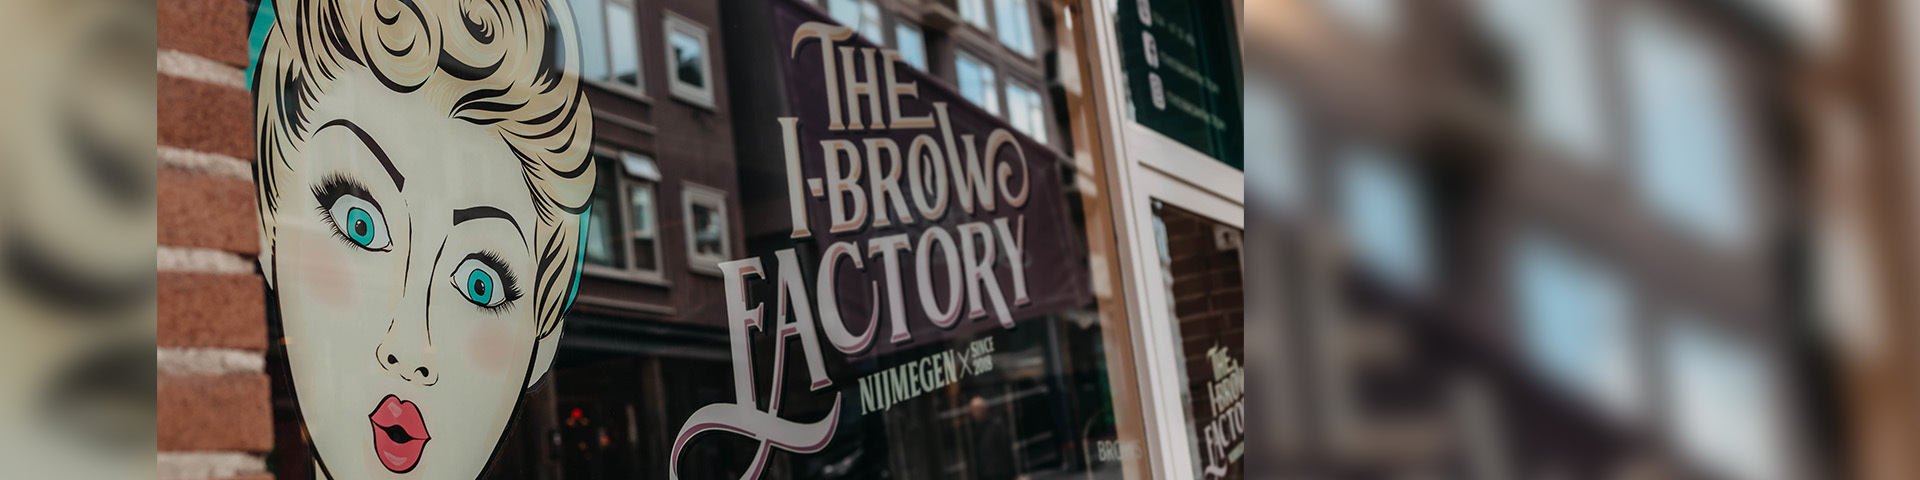 Salon X: Vera's The I-Brow Factory is een begrip in Nijmegen